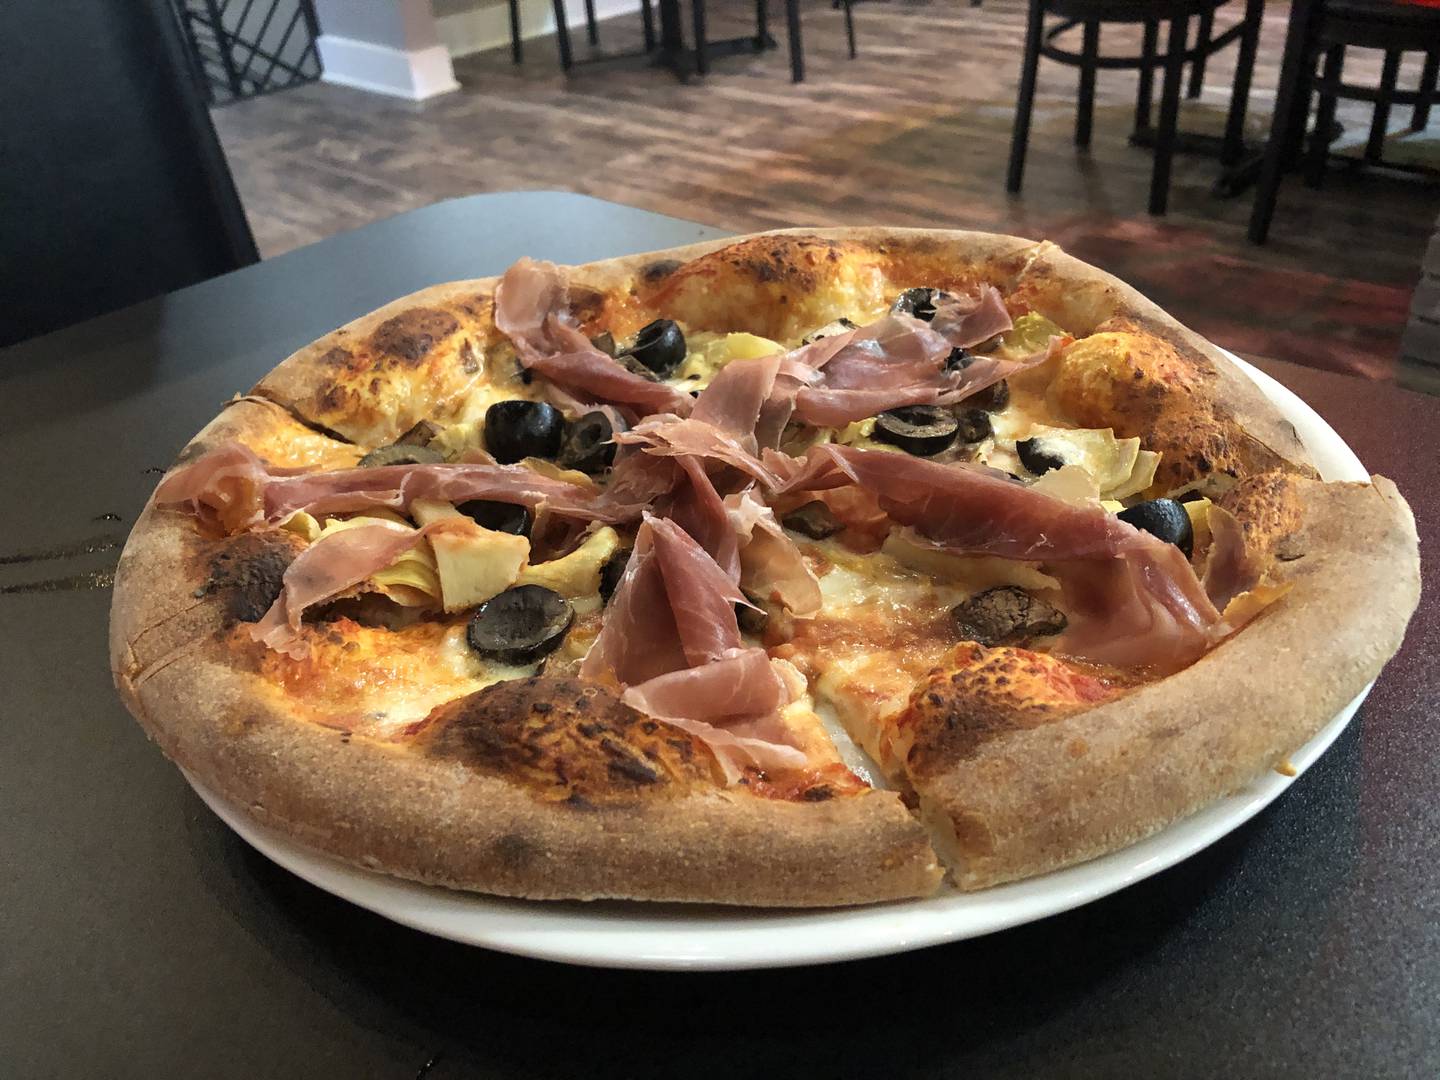 Capricciosa pizza with prosciutto, artichokes, fresh mozzarella, portabella mushrooms & black olives at Bella's Wood Fire Pizzeria, 123 S. Main St., Algonquin